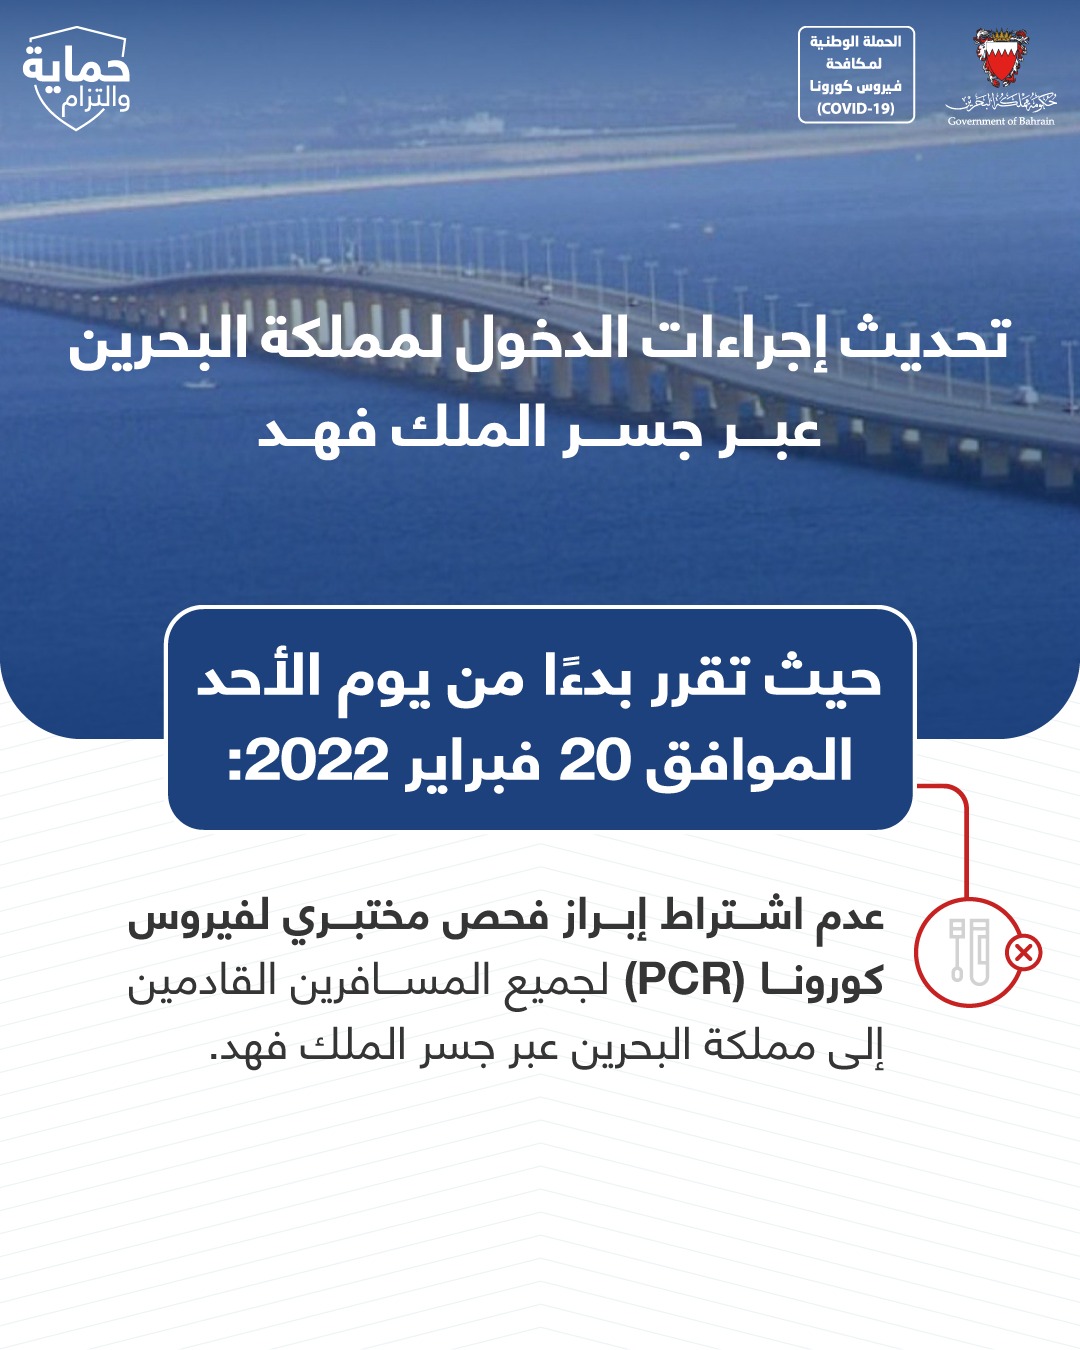 تحديث إجراءات الدخول لمملكة البحرين عبر جسر الملك فهد